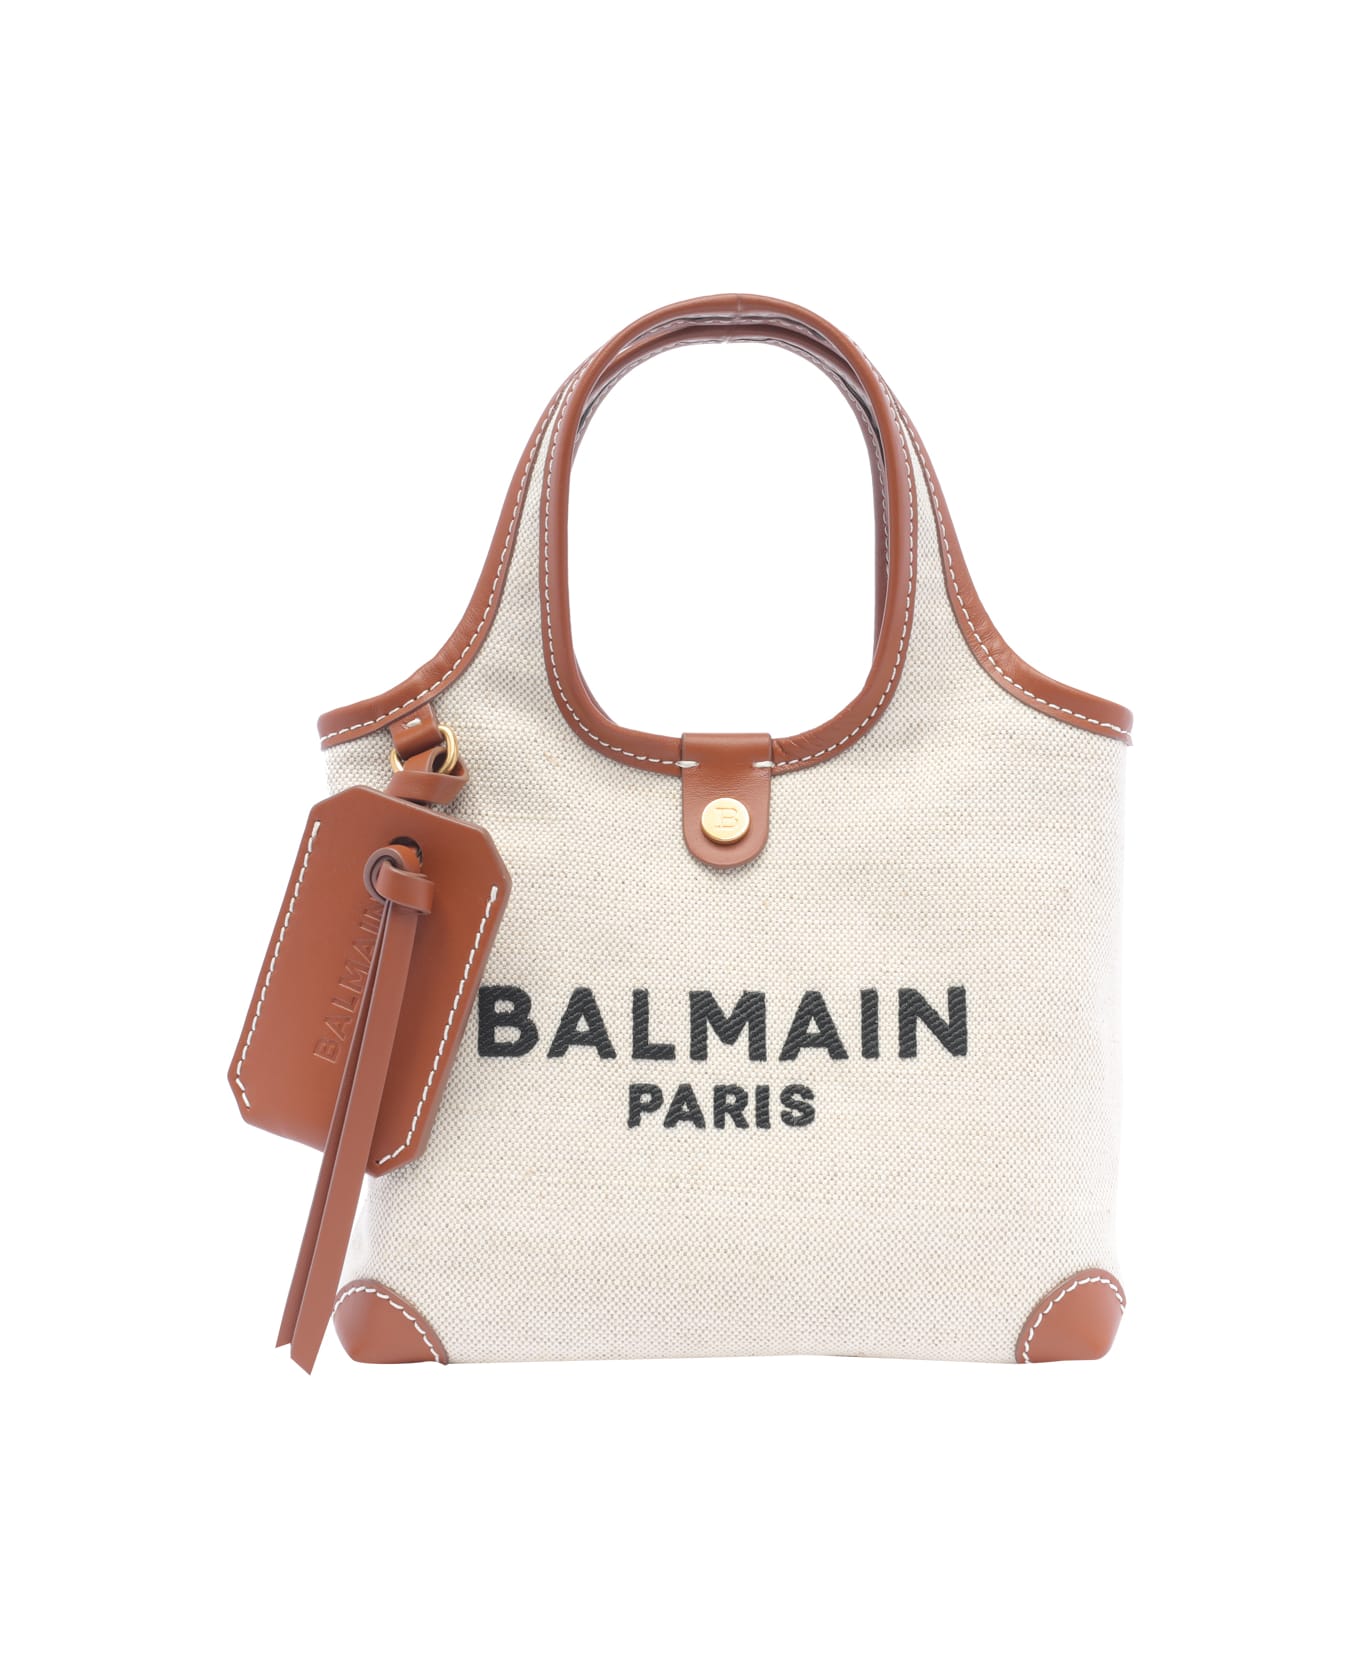 Balmain B-army Hand Bag - White